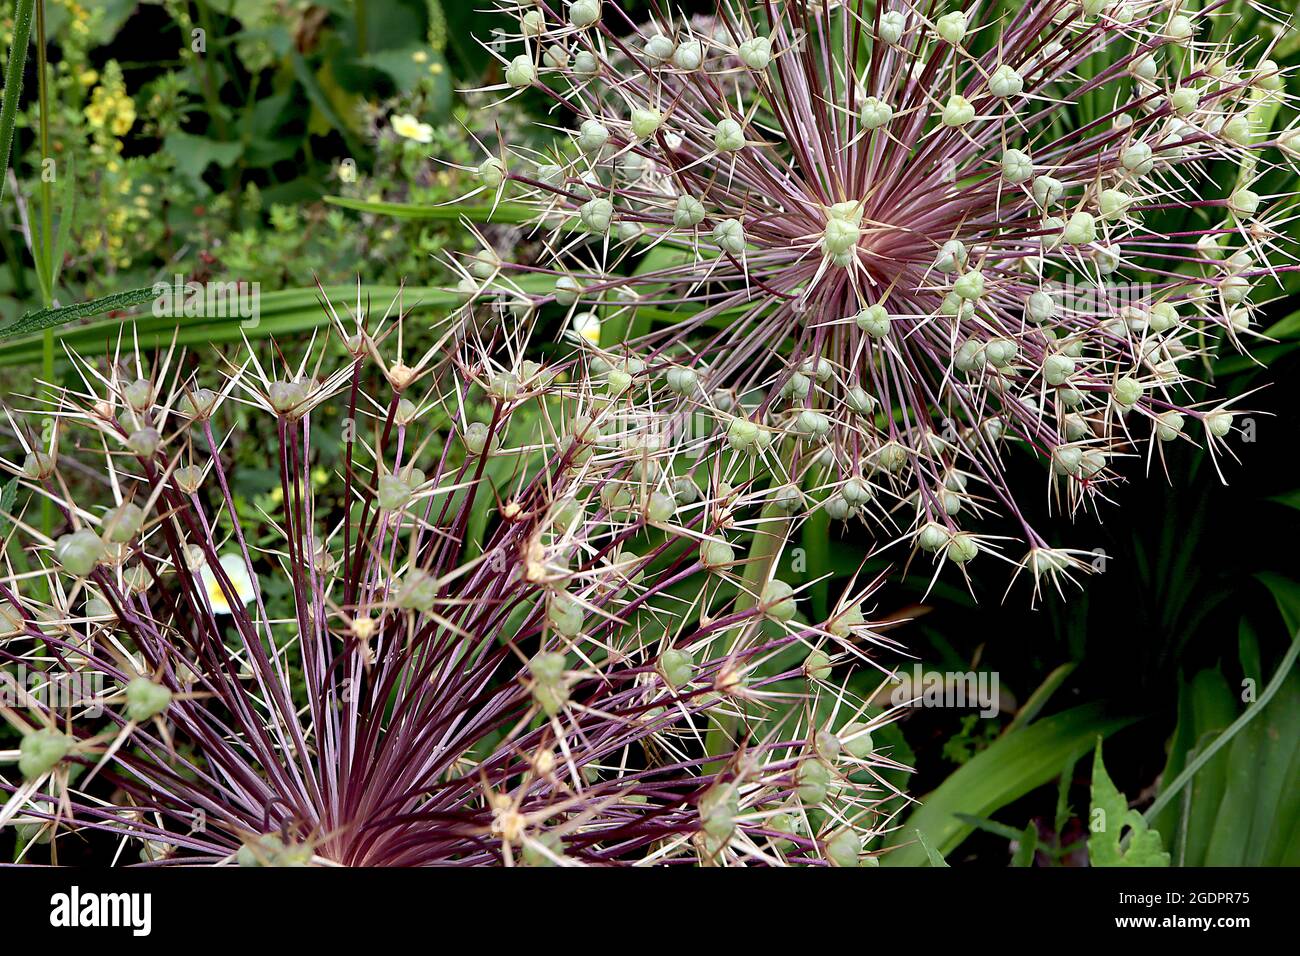 Allium x christophii ‘Purple Rain’ Allium Purple Rain - ombel sphérique de fleurs étroites en forme d'étoile pourpre sur tige haute, juillet, Angleterre, Royaume-Uni Banque D'Images